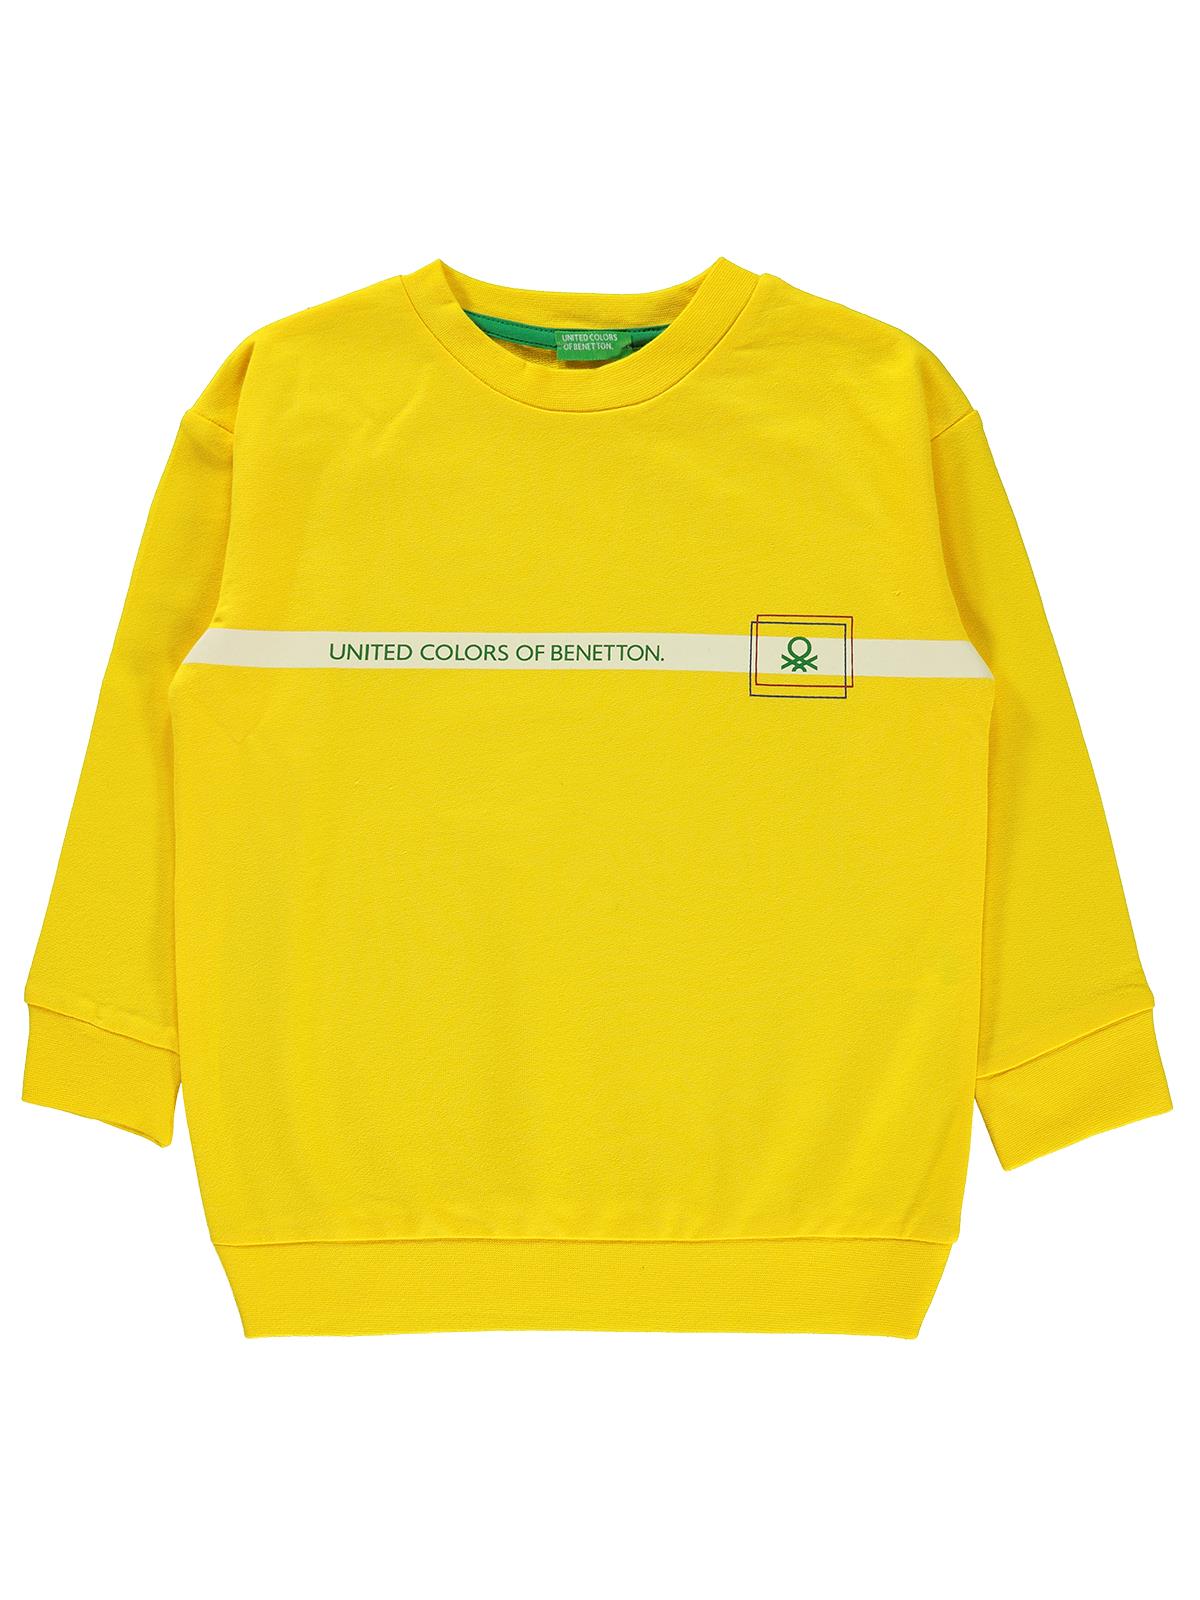 Benetton Erkek Çocuk Sweatshirt 4-13 Yaş Sarı